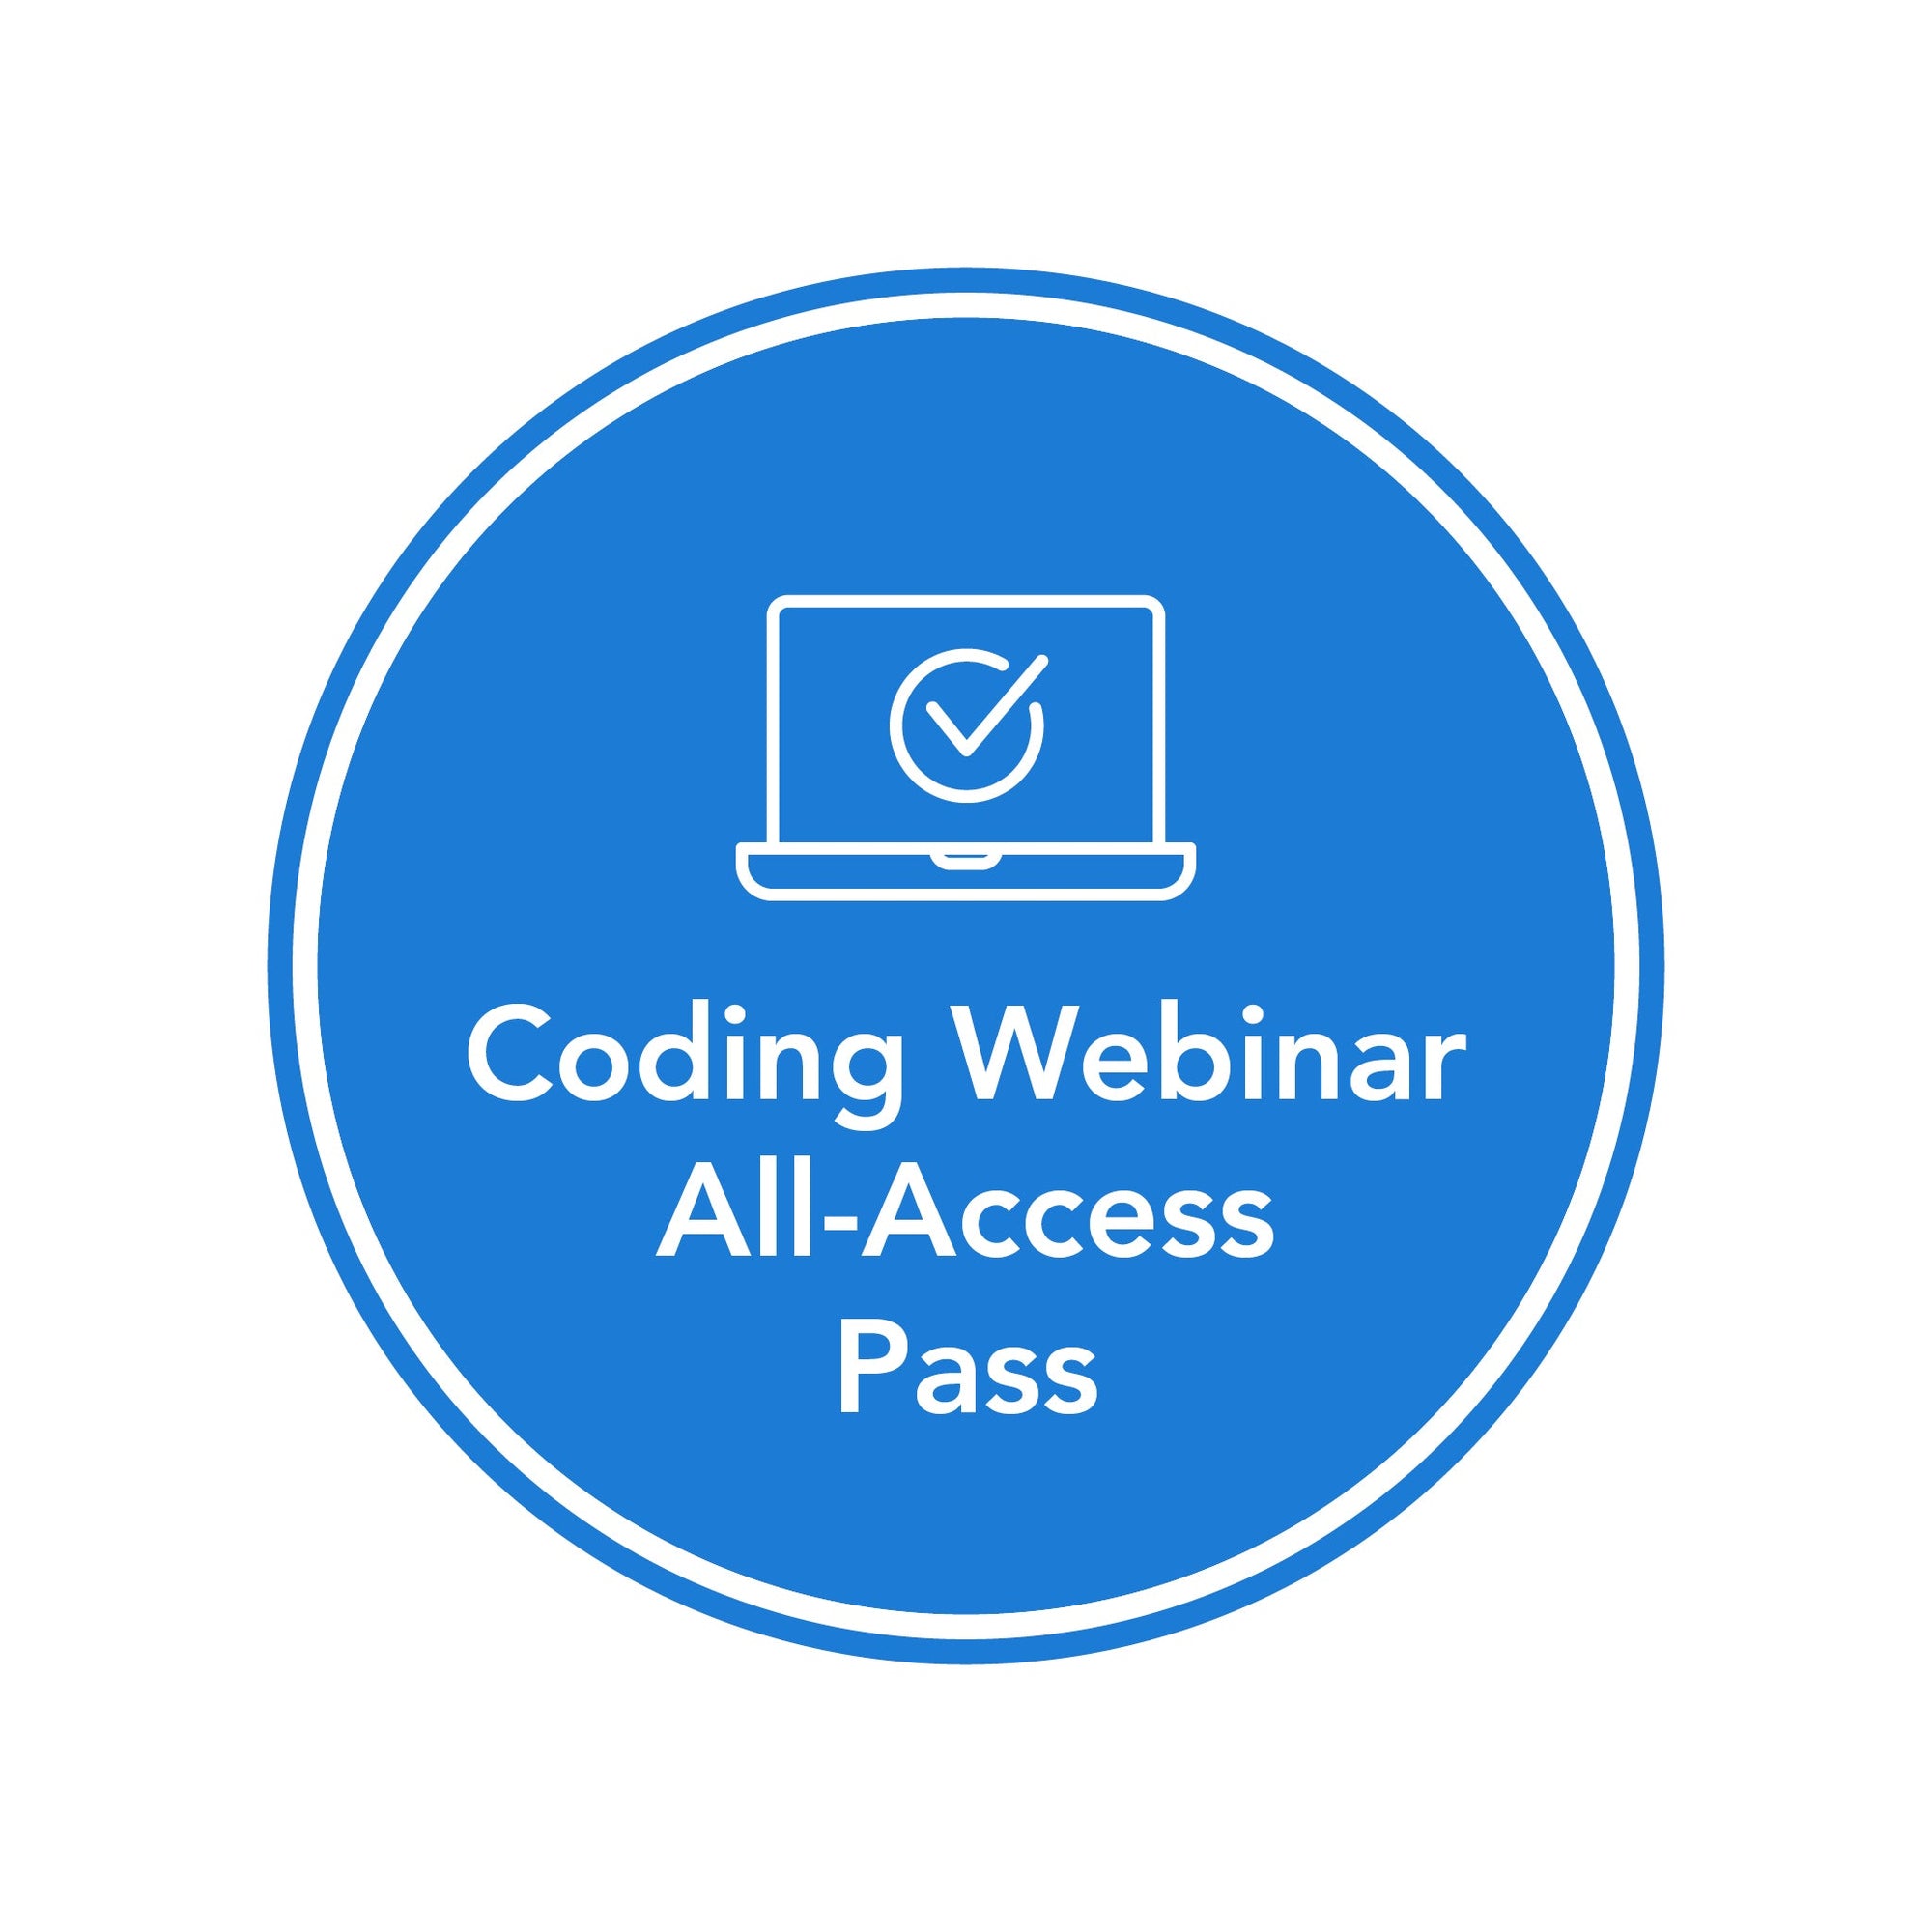 Coding Webinar All-Access Pass